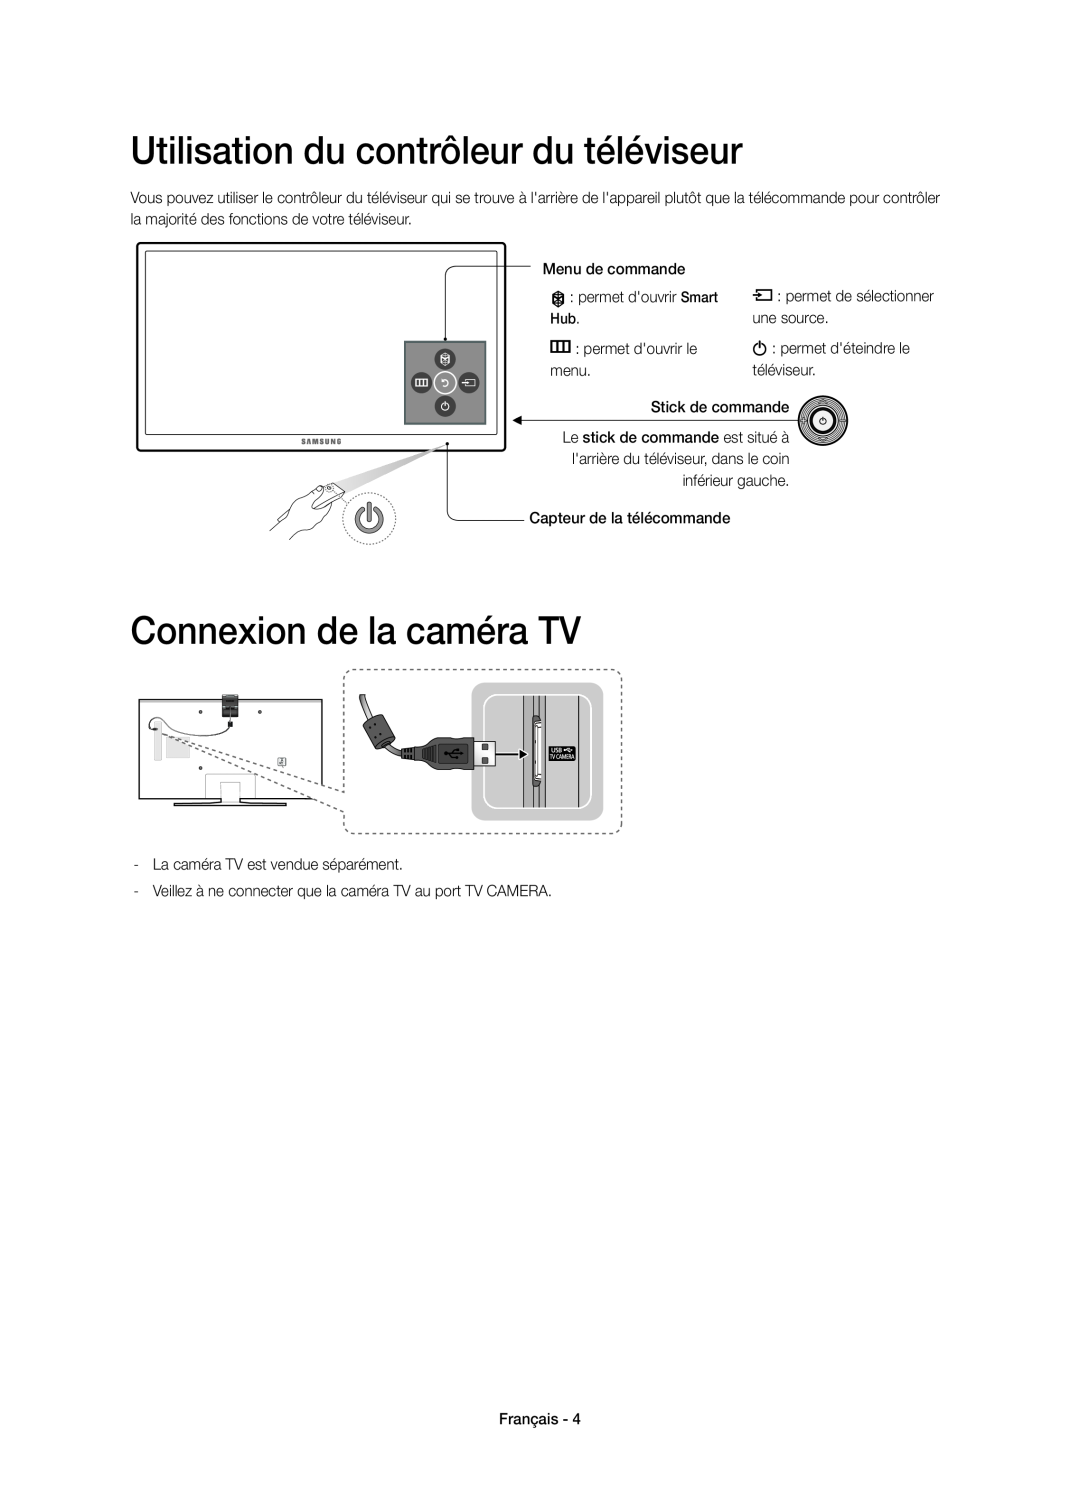 Samsung UE48J5550SUXZG manual Utilisation du contrôleur du téléviseur, Connexion de la caméra TV, permet de sélectionner 